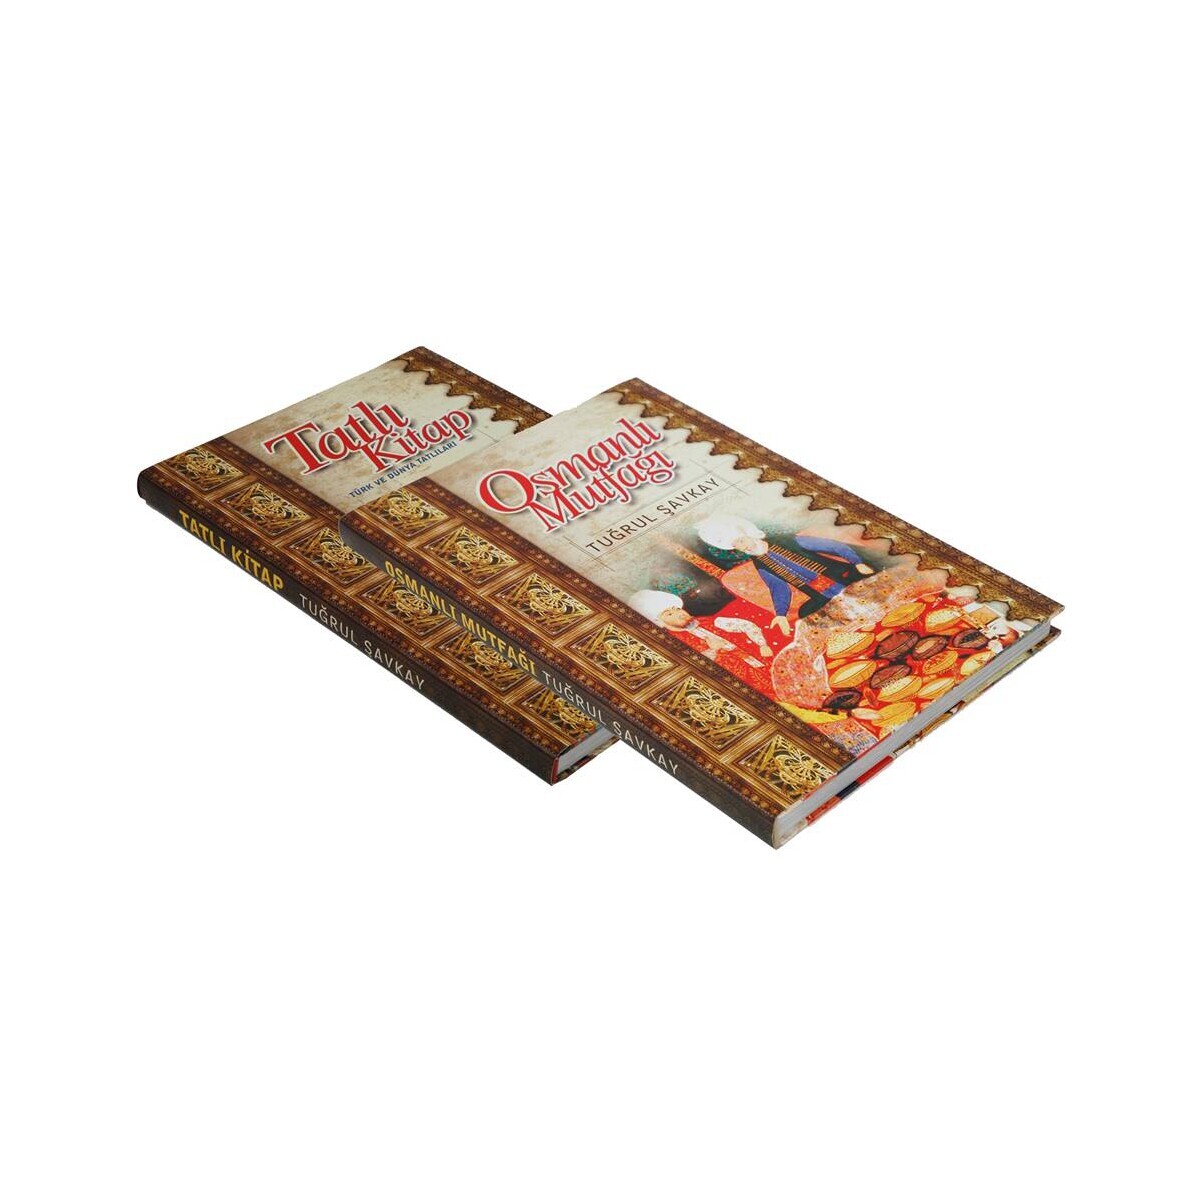 Mutfağın Master Şeflerine Özel 2 Cilt Takım: Osmanlı Mutfağı Kitabı Alana Tatlı Kitabı Hediye